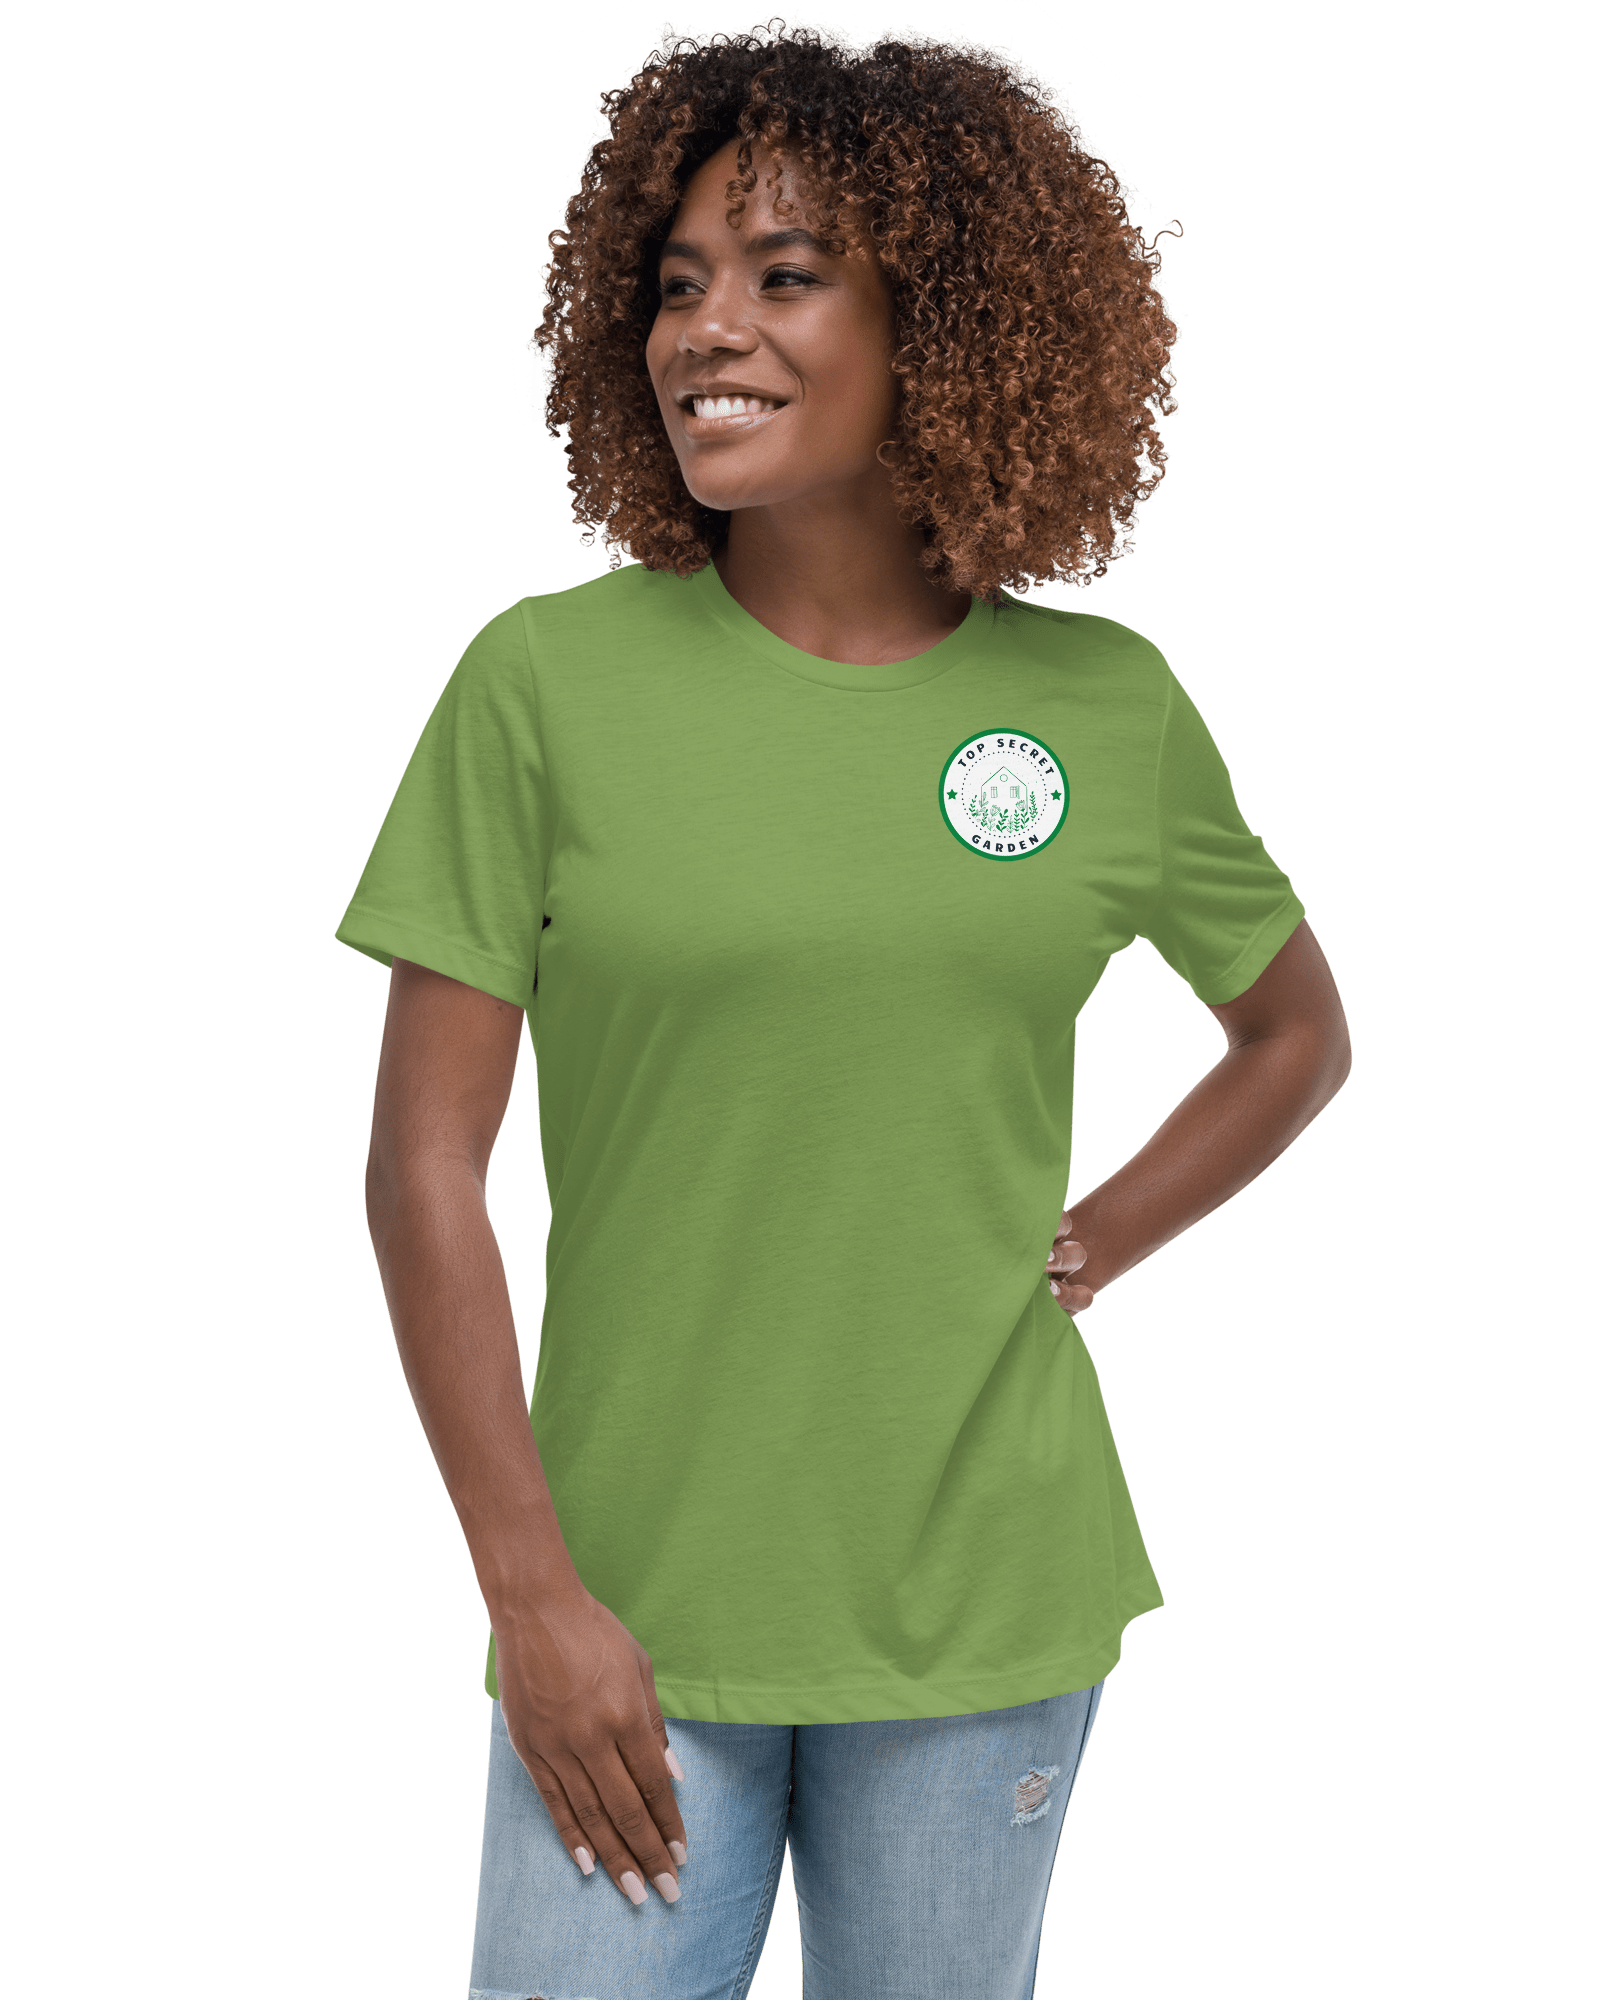 Top Secret Garden | Women's Relaxed T-Shirt Shirts & Tops Jolly & Goode